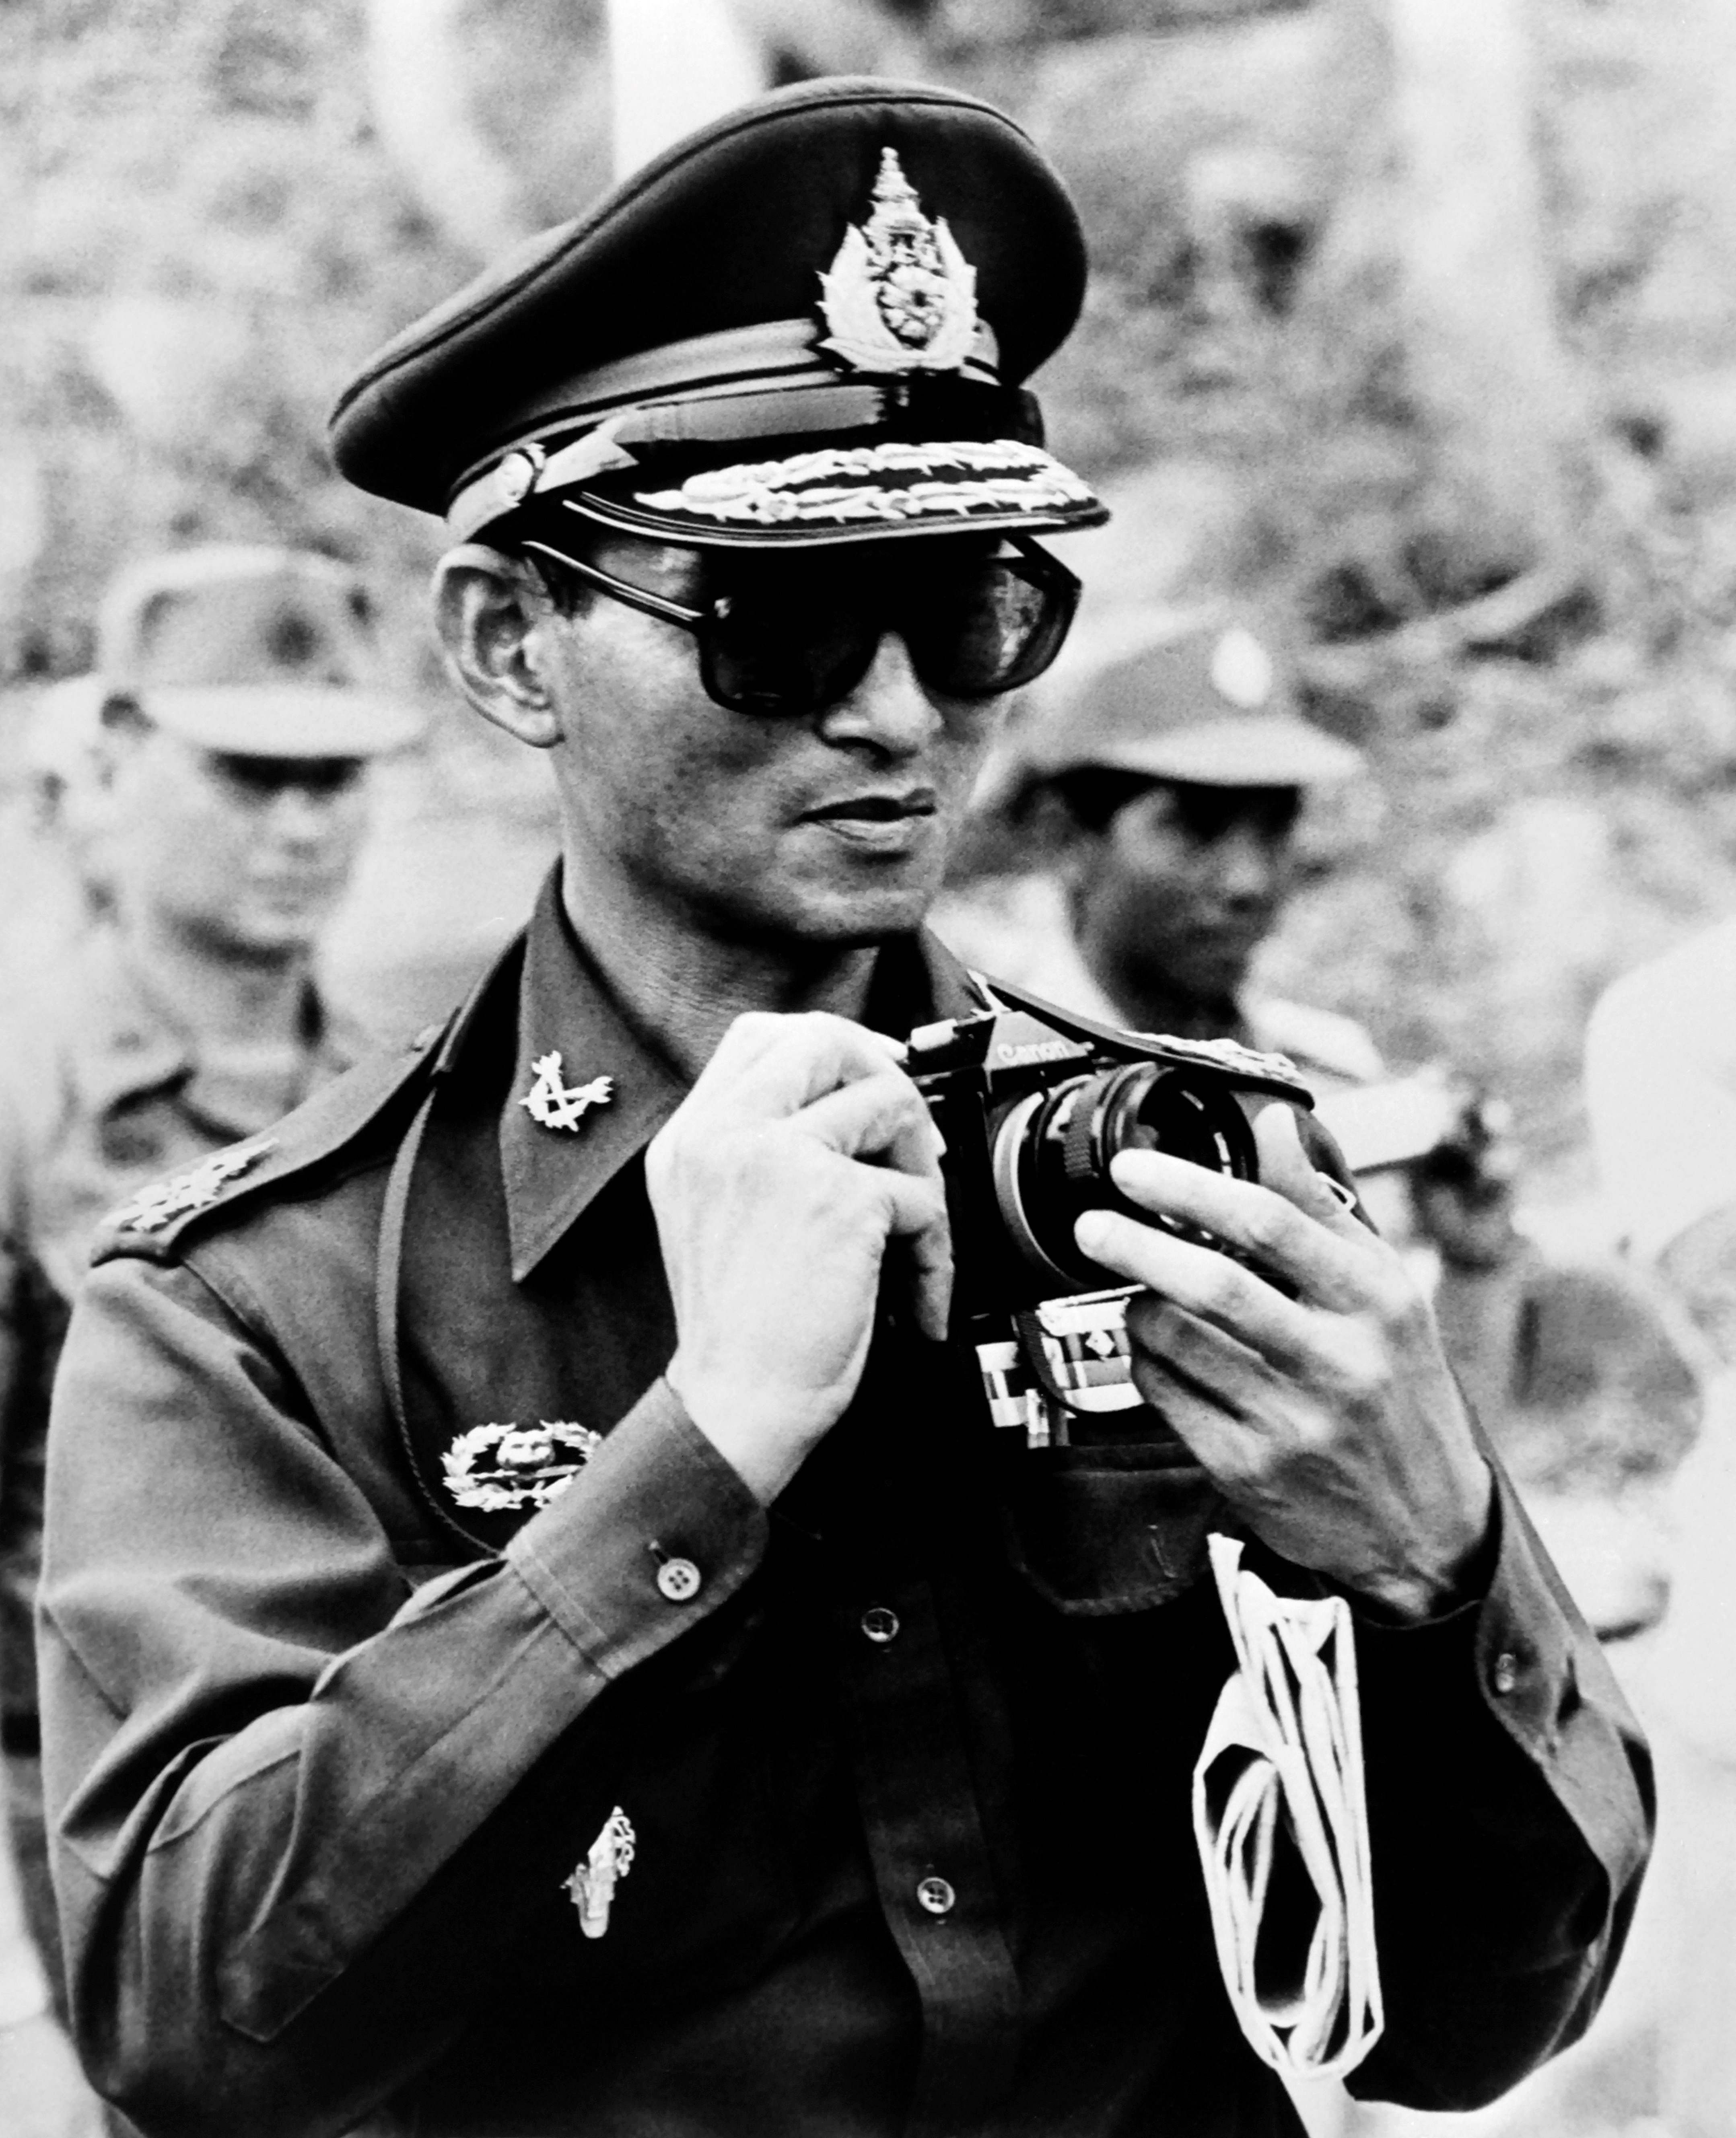 يوليو 1980 الملك التايلاندي بهوميبول أدولياديج باستخدام كاميرا يابانية الصنع لالتقاط الصور على طول الحدود التايلاندية الكمبودية